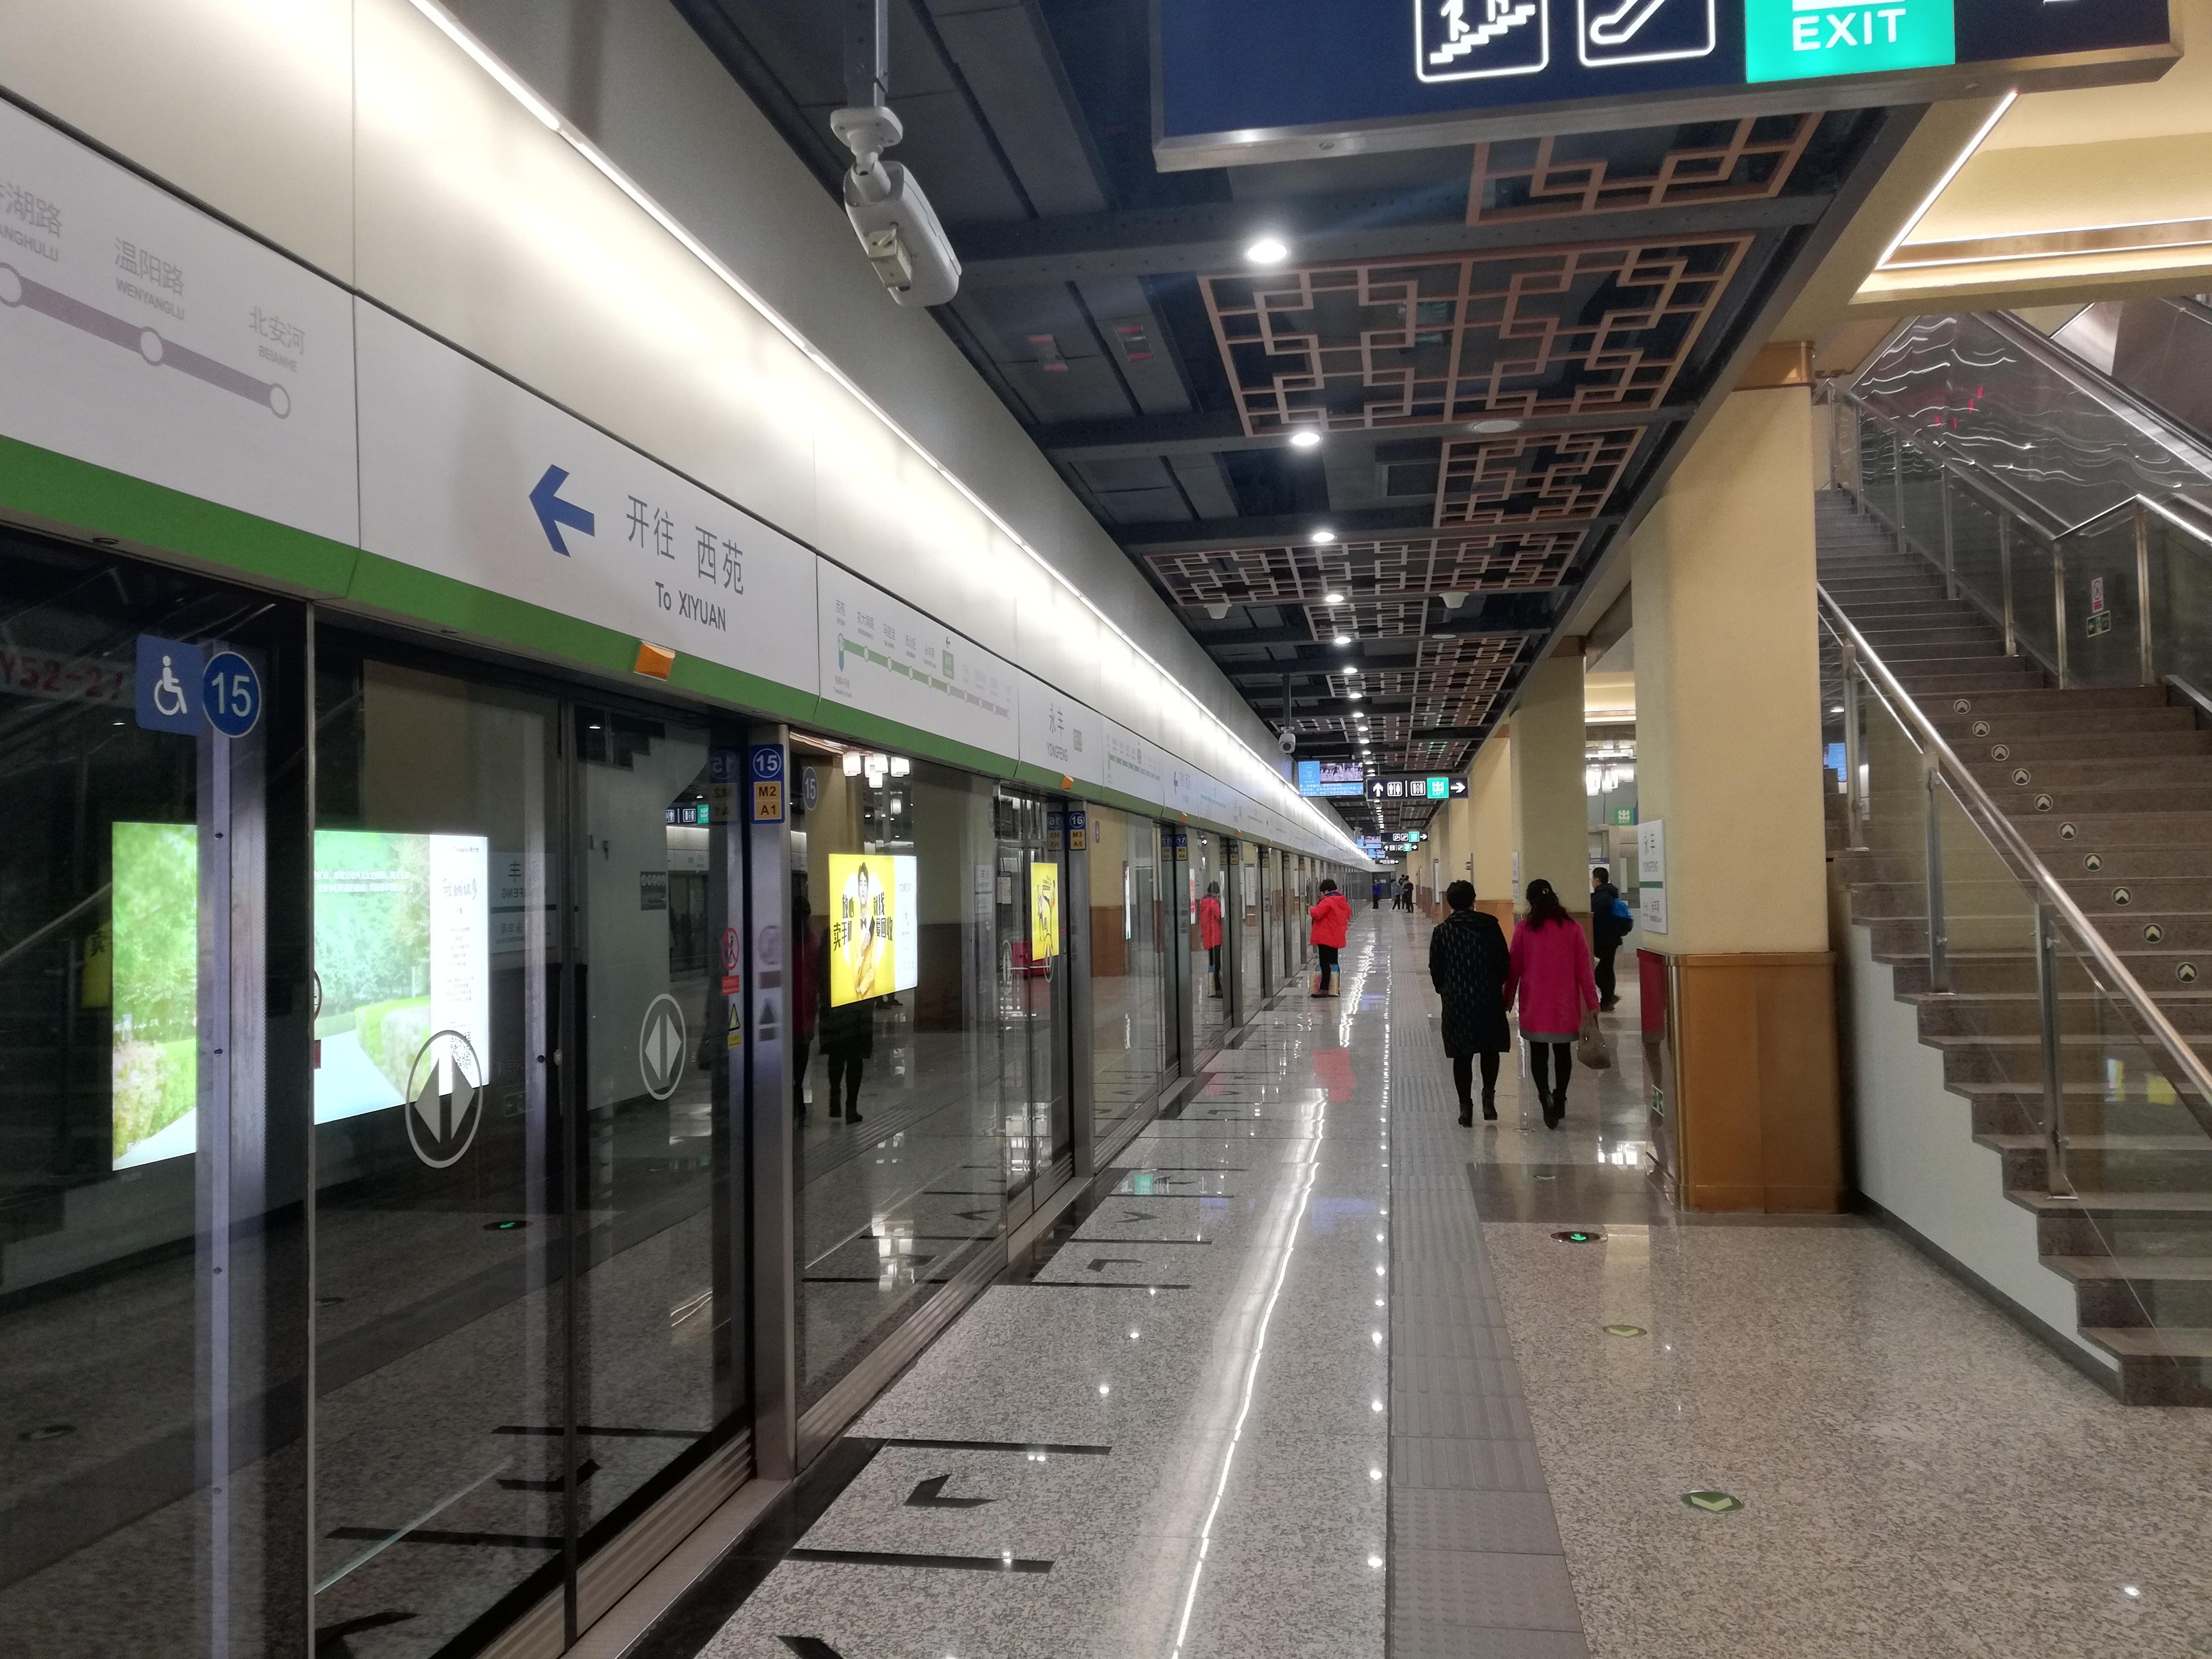 北京地铁16号线南段图片